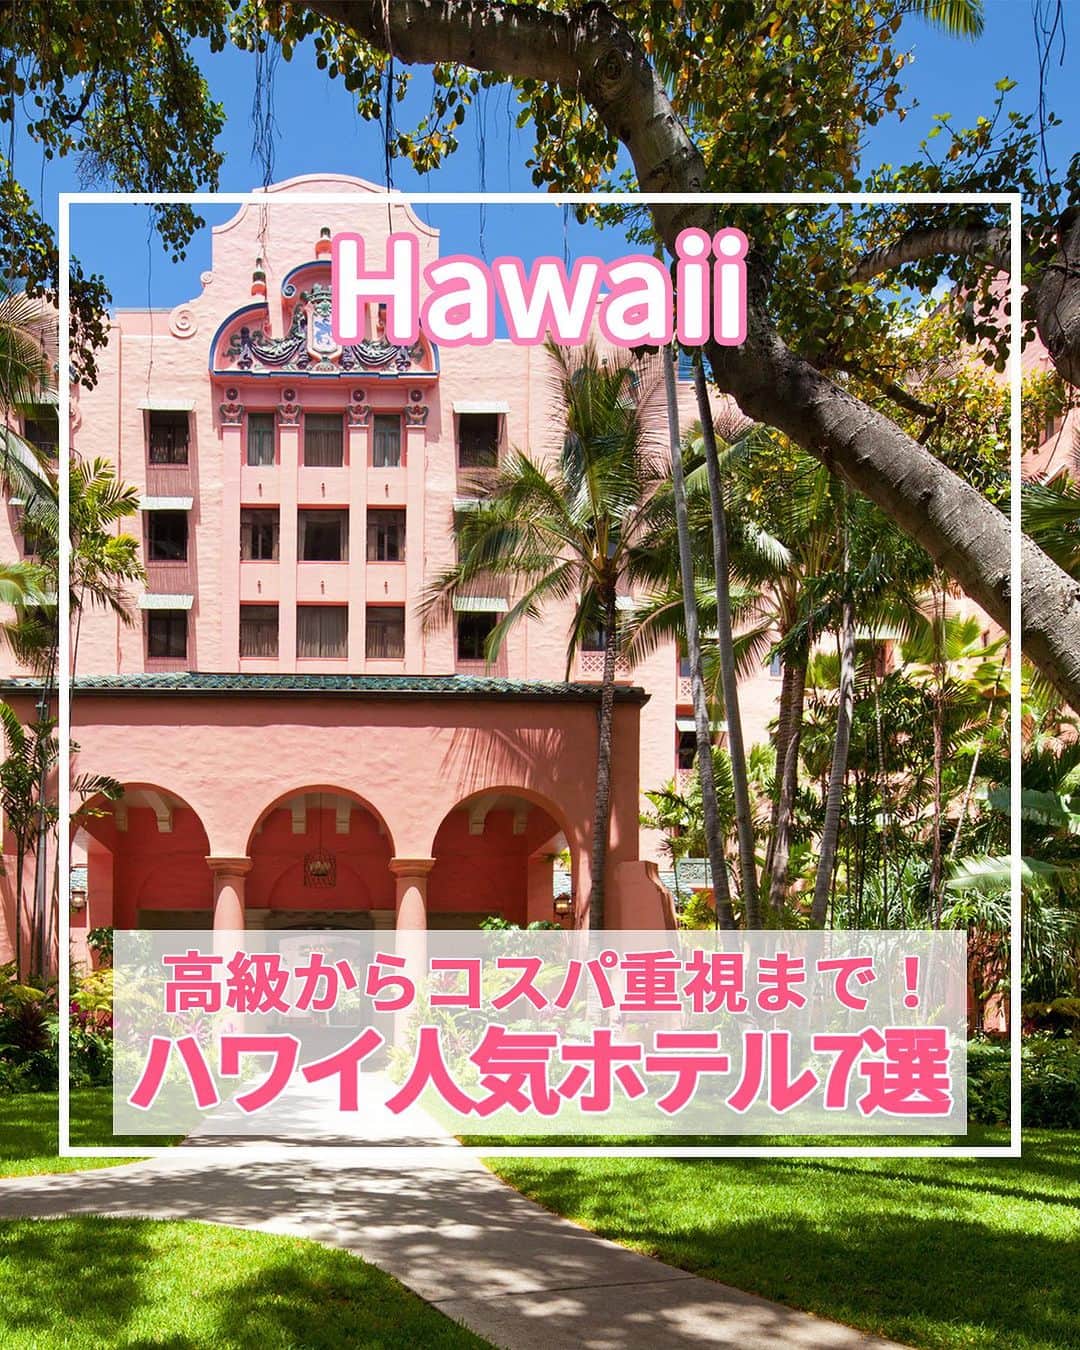 旅工房公式さんのインスタグラム写真 - (旅工房公式Instagram)「＼旅行会社社員のおすすめ！ハワイの人気ホテル紹介！／  #ハワイ #ハワイホテル  ハワイツアー👉https://www.tabikobo.com/area/hawaii/hawaii/   こんにちは！☺  今回は、旅行で大人気のハワイの人気ホテルを紹介します！👀💛  また、旅Pocketではハワイおすすめホテルランキングも特集しています！ぜひハイライトから旅Pocketの記事もチェックしてみてください✨   ぜひハワイ旅行の参考にしてみてくださいね＼(^o^)／ 💚   ━━━━━━━━━━━━━━━ ▽  📍ハレクラニ （@halekulanihotel、@halekulani.japan）  「天国にふさわしい館」の由来通りのラグジュアリーホテル！  創業から1世紀を越えた今も変わらない心からのおもてなしが味わえます。  水色と白を基調とした客室はゆったりとした広さ♪  海外では珍しく深いバスタブがあって寛げるのも嬉しいポイントの1つです。   📍ロイヤル ハワイアン ラグジュアリー コレクション リゾート （@royal_hawaiian、@royalhawaiianjp）  太平洋のピンクパレスと愛されるワイキキビーチの代表的なホテル♪  ワイキキの中心にありながらも、椰子の木が揺れる清々しい自然豊かな中庭も魅力です！  ホテル内にあるビーチフロントのレストランではピンクの見た目がかわいいピンクパレス・パンケーキが食べられます◎   📍トランプ インターナショナル ホテル ワイキキ（@trumpwaikiki、@trump_hotel_waikiki）  海を一望できるインフィニティプール、高級レストラン、ザ・スパアットトランプなど、最高のおもてなしを味わえるホテルです。  コンドミニアムタイプなので室内には高級家電を完備したフルキッチンまたは簡易キッチンがあり、ファミリーや大人のグループ旅行にもおすすめです！   📍アロヒラニ リゾート ワイキキ ビーチ（@alohilaniresort、@alohilaniresort.jp）  プライベートラナイ（一部の客室を除く）のある客室は、清潔感がありアイランドモダンな雰囲気♪  5階にはインフィニティープールやプールバー、おしゃれなプールデッキがありビーチを眺めることもできます！  ワイキキビーチまで30秒という観光に便利な立地もポイント！   📍シェラトン・ワイキキ（@sheratonwaikiki、@sheratonwaikikijp）  食事やショッピング、トロリーに乗るにも便利な場所で、ワイキキビーチが目の前！  子どもから大人まで楽しめるウォータースライダーやジャグジーのある、「Helumoa Playground」はファミリーに大人気♪  16歳以上のホテルゲストはインフィニティプールも利用できますよ！   📍アストン アット ザ ワイキキ バニアン  大型施設で、長期滞在者、リピーターに人気のコンドミニアム！  全室ワンベッドルームスイートで部屋は広く、自宅でゆったりとくつろいでいるような気分♪  レクリエーションスペースでは、バーベキューグリルが利用が可能なので、家族や友人とワイワイ過ごすのもおすすめ◎   📍ハイアット プレイス ワイキキビーチ（@hyattplacewaikiki）  ワイキキの東側、クヒオビーチやホノルル動物園まで徒歩5分！  広々とした客室が特徴で、ホテル全館に無料Wi-Fiを完備されています。  また、ゲストキッチンでは毎日できたてのコンチネンタル朝食を  無料で食べることができるのも嬉しいポイント♪   ※営業時間・内容は変更になる場合がございます。詳しくは各ホームページをご確認ください。   海外・国内問わず、素敵なスポットやグルメ、アイテムの写真にはぜひ #旅工房 や @tabikobo をタグ付けして下さい💕   ━━━━━━━━━━━━━━━   ✨   #旅工房  #旅工房 #ハワイ女子旅 #ハワイ観光 #ハワイ旅行 #ハワイお土産 #ハレクラニ #ロイヤルハワイアン #ピンクパンケーキ #トランプインターナショナルホテル #アロヒラニリゾート #アストンワイキキ #ハイアットプレイス #シェラトンワイキキ #旅行好きな人と繋がりたい #海外旅行準備 #旅好き女子 #妄想旅行 #海外旅行行きたい #海外旅行計画 #旅スタグラム #海外一人旅 #旅の記録」10月20日 18時50分 - tabikobo